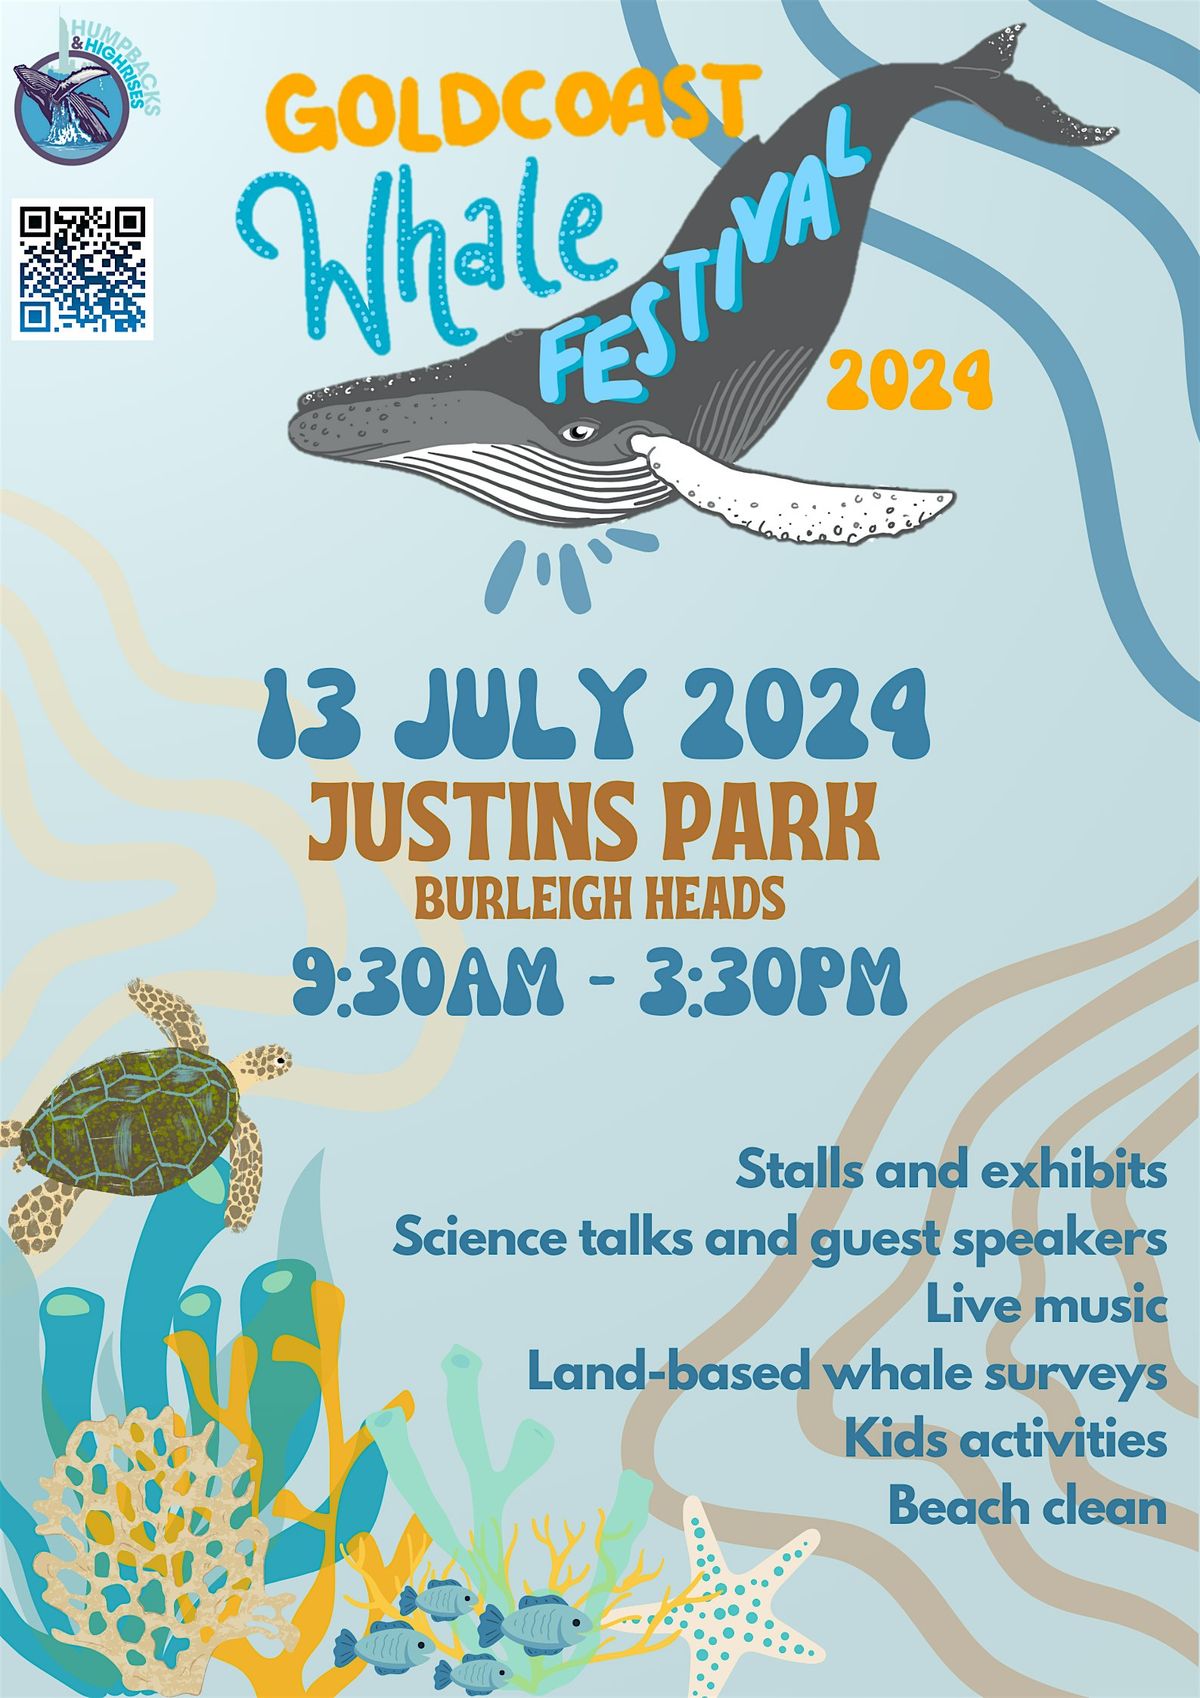 Gold Coast Whale Festival 2024